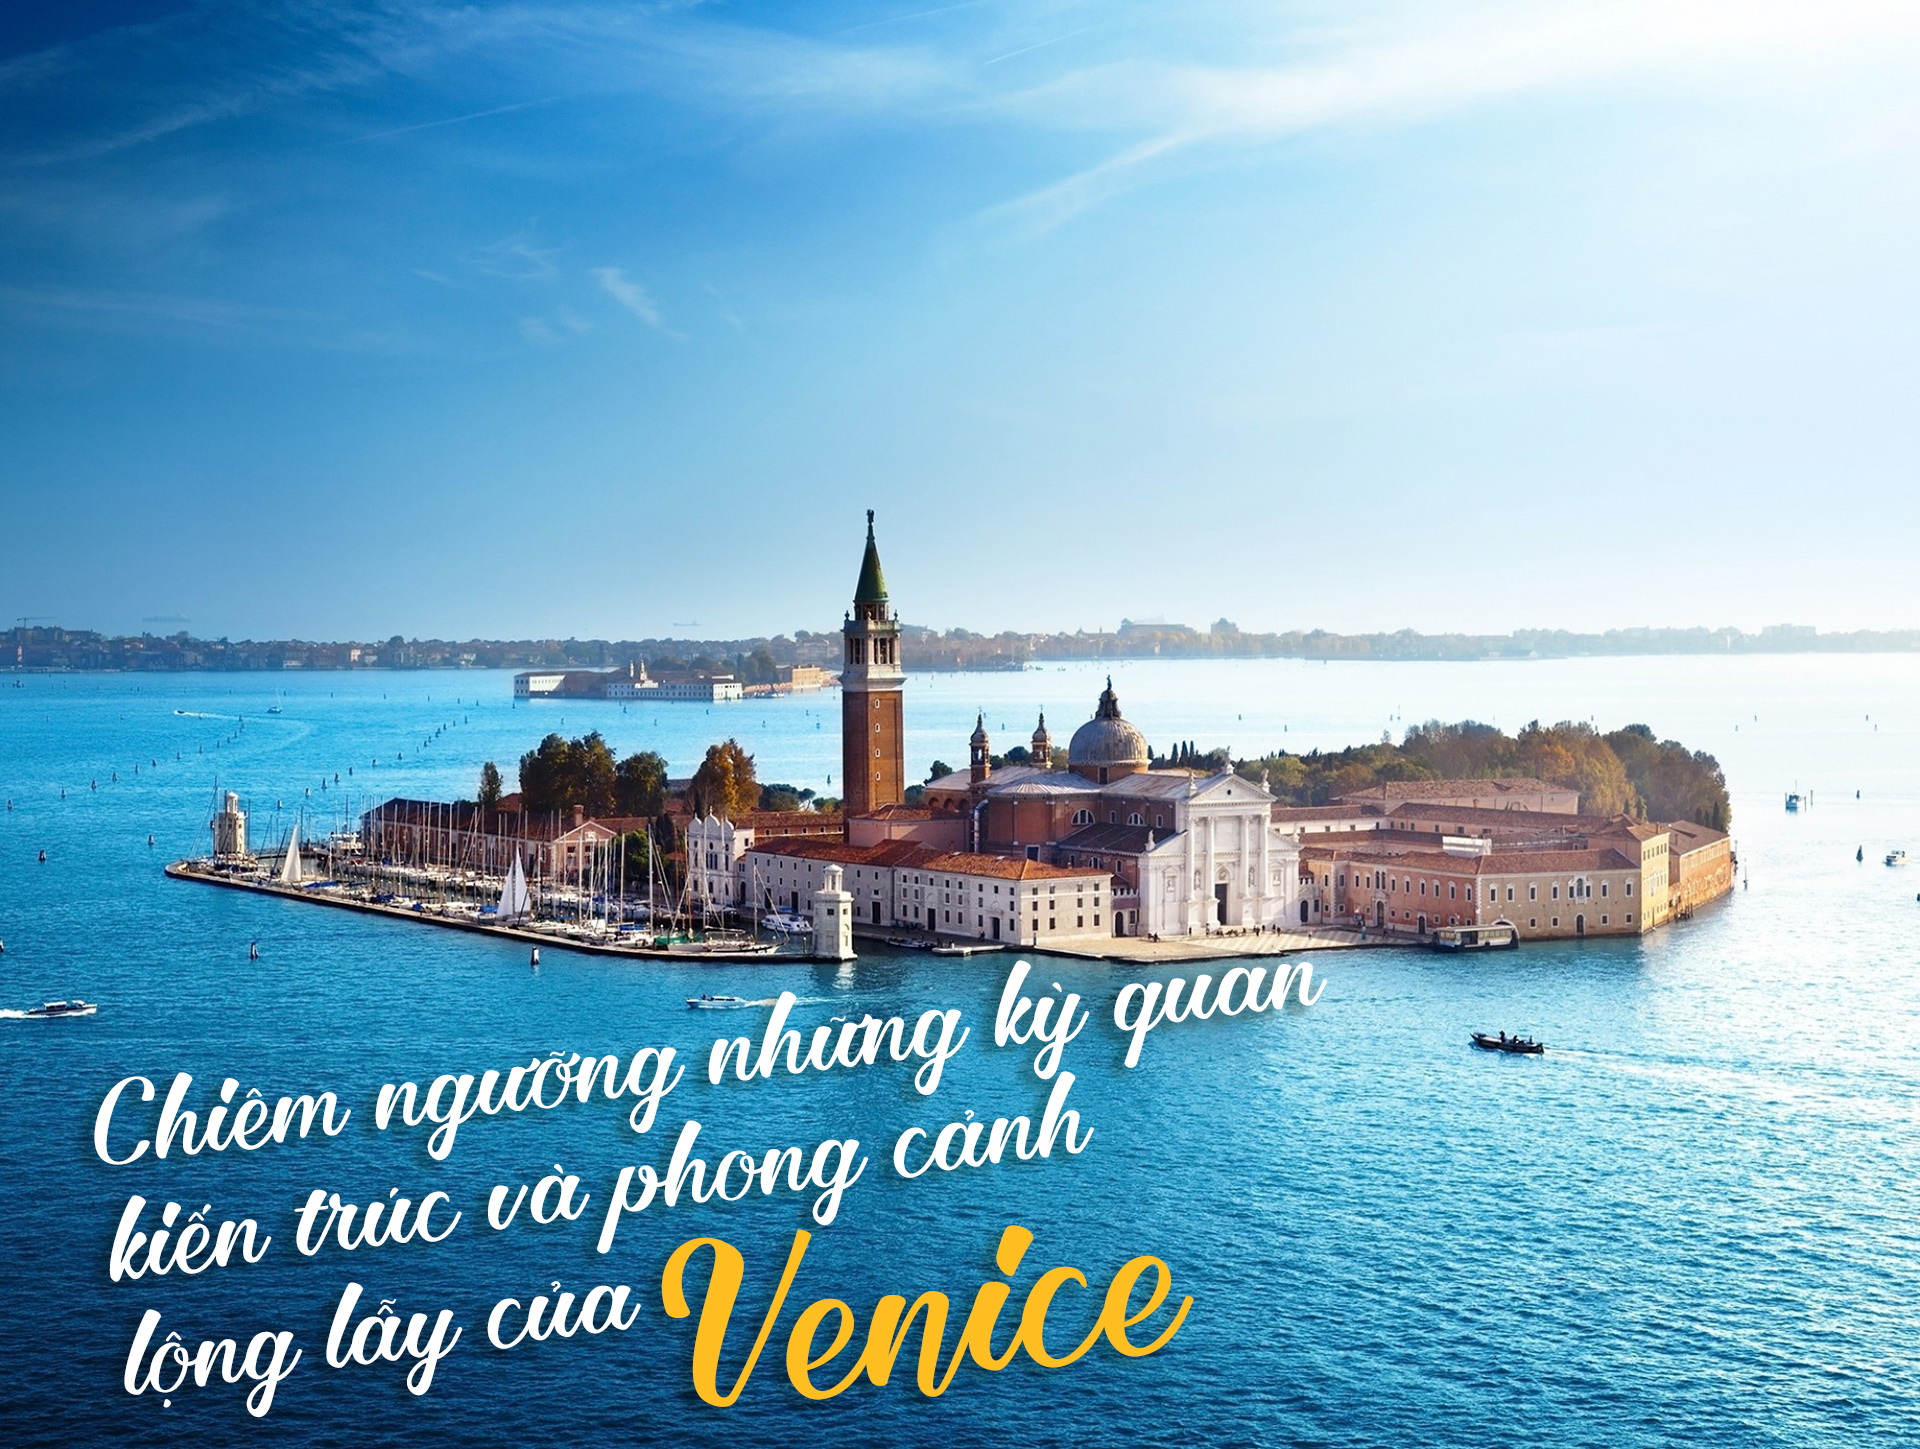 Chiêm ngưỡng những kỳ quan kiến trúc và phong cảnh lộng lẫy của Venice - 1